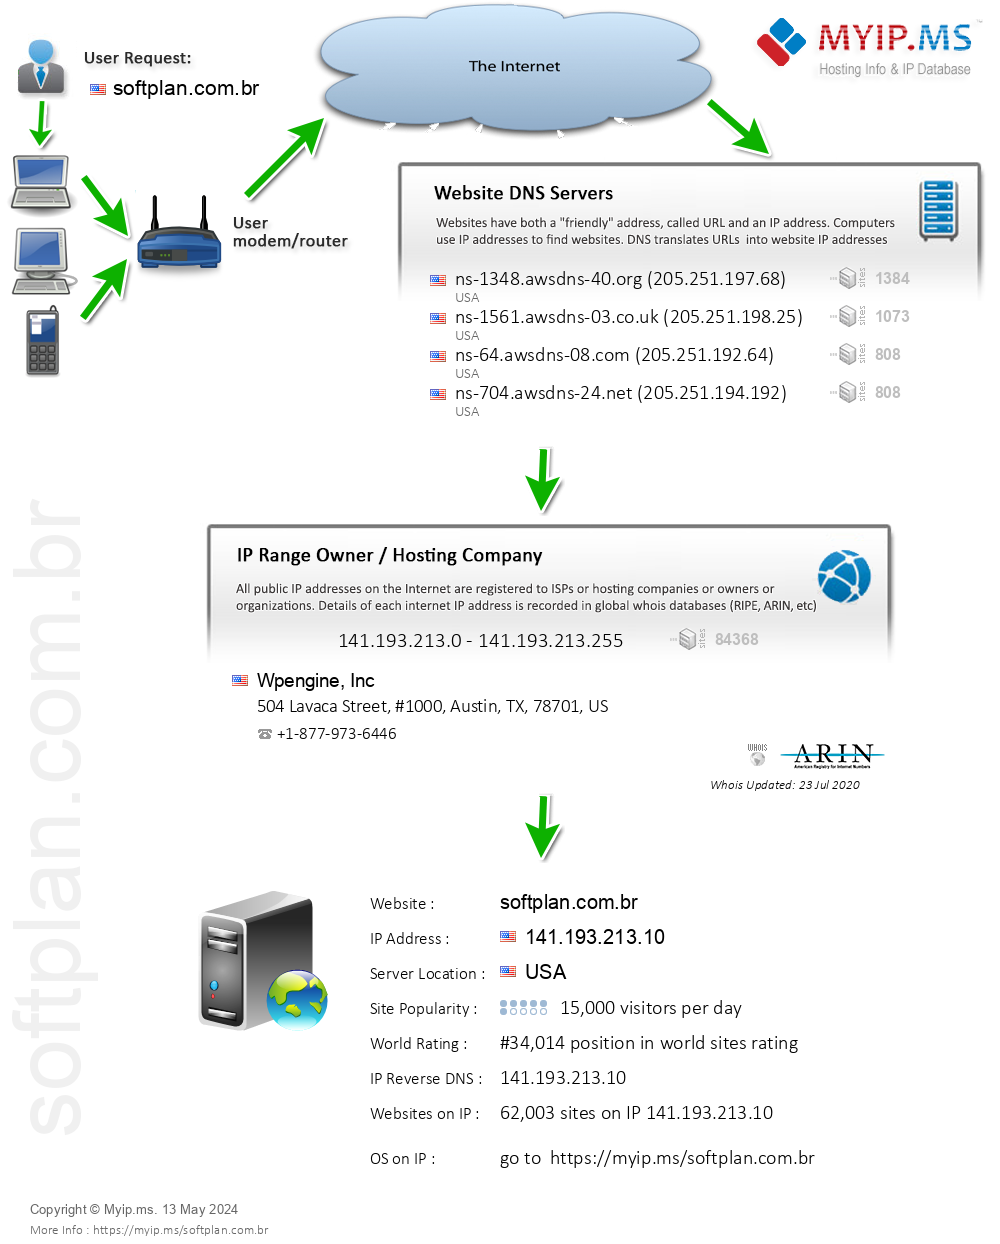 Softplan.com.br - Website Hosting Visual IP Diagram